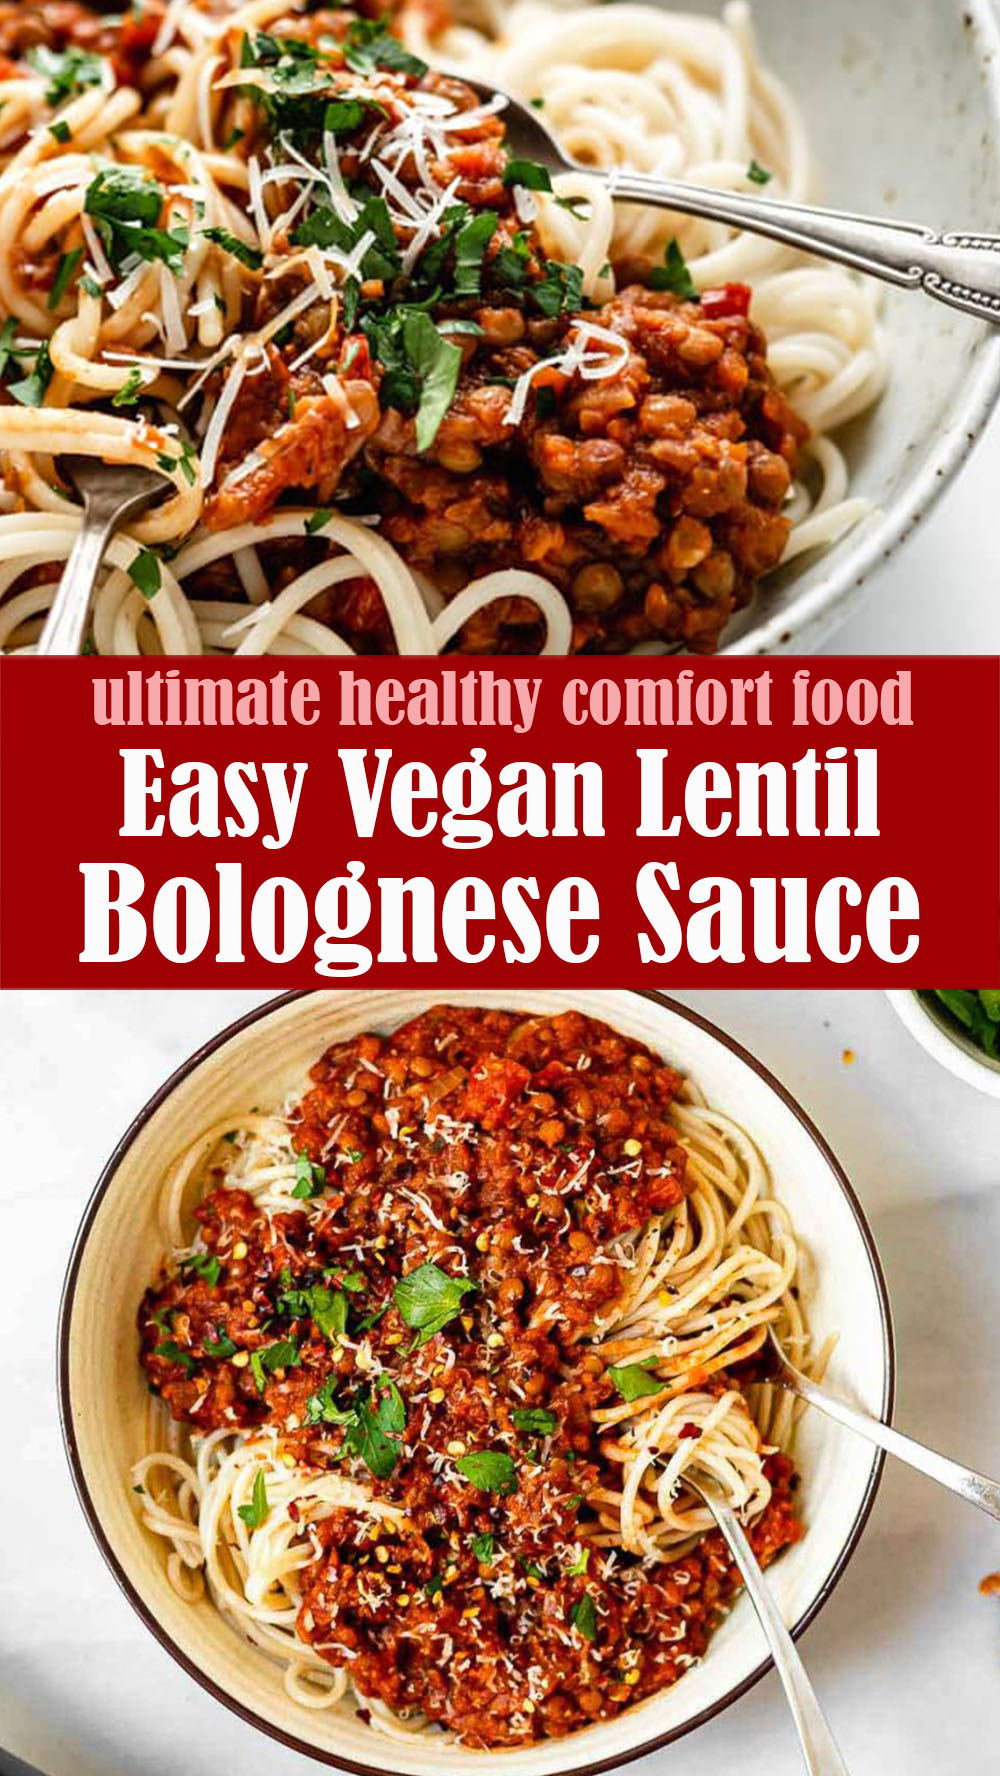 Easy Vegan Lentil Bolognese Sauce